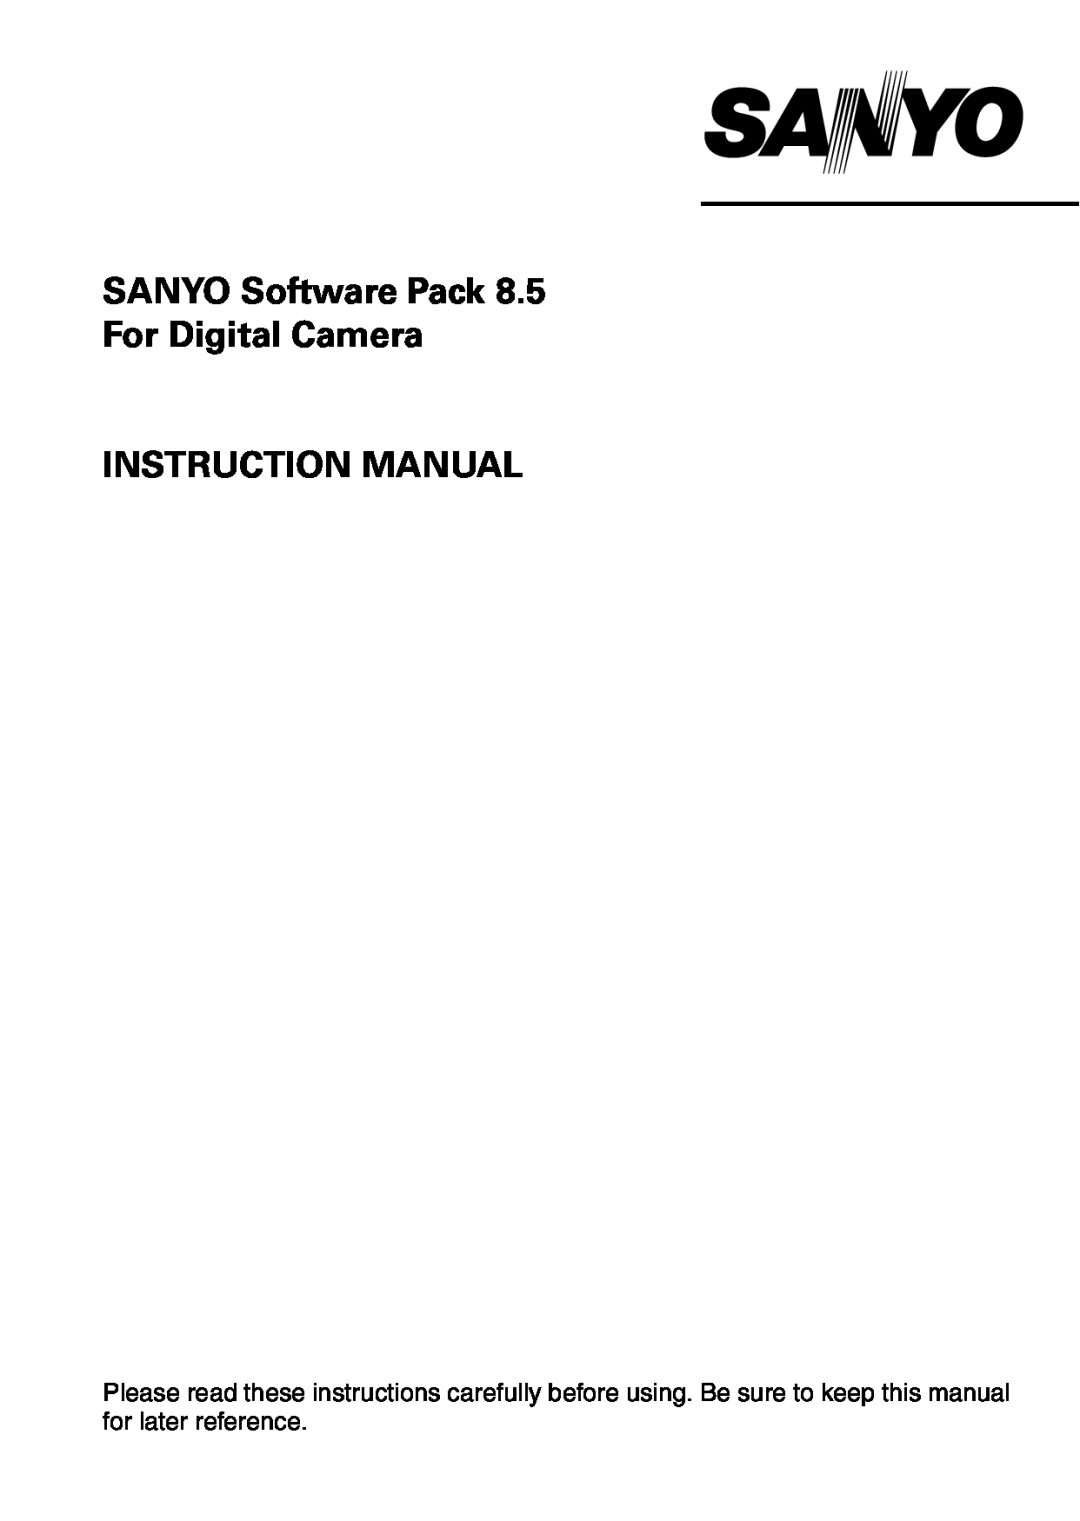 Sanyo VPC-S60 instruction manual SANYO Software Pack 8.5 For Digital Camera INSTRUCTION MANUAL 